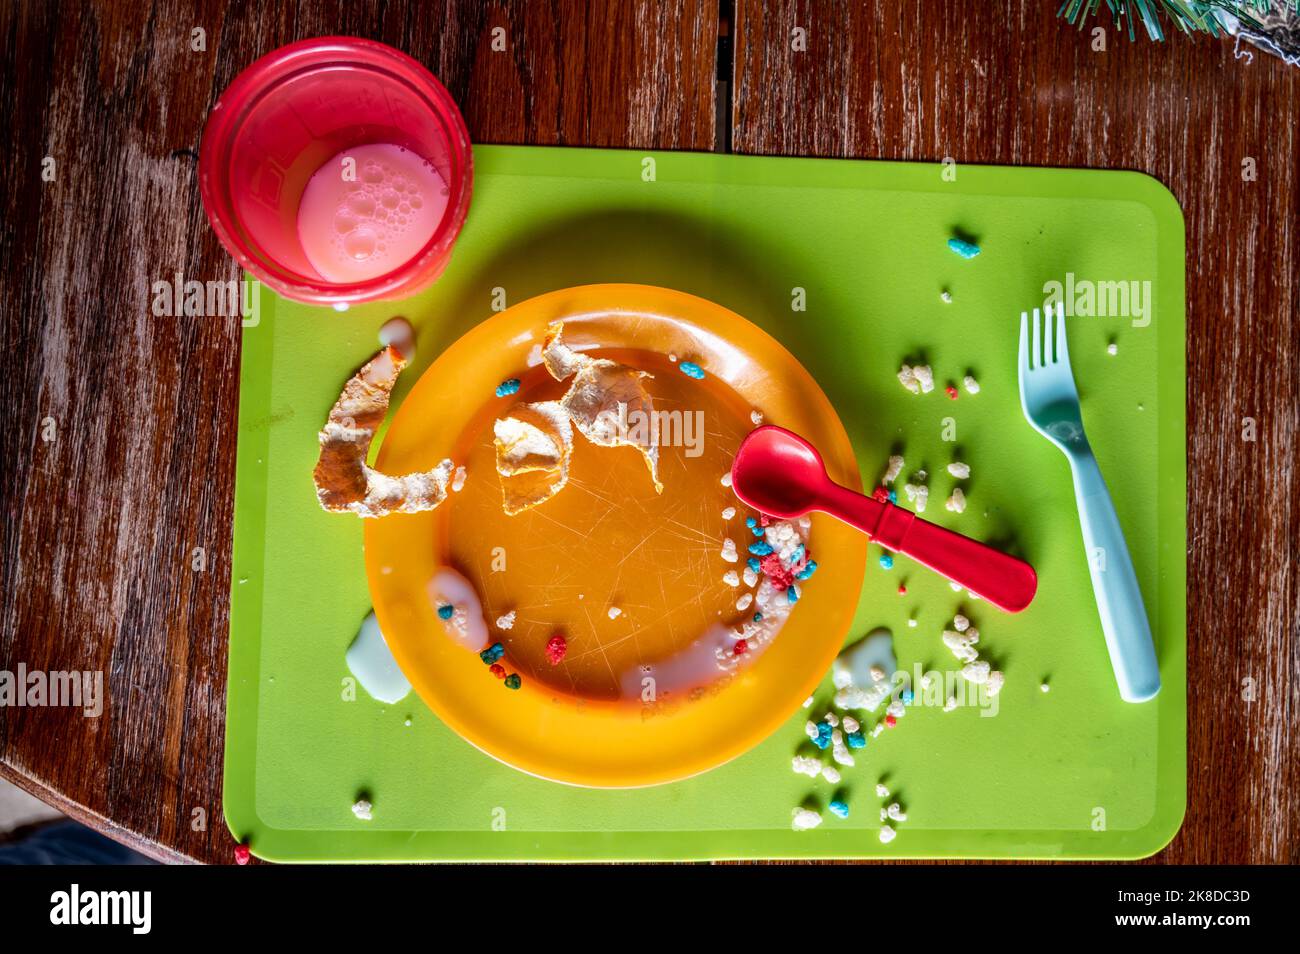 Il disordine ha lasciato al tavolo della cucina dopo che un bambino ha rifinito. Forchetta, tazza e piatto in plastica cosparsi di gocce e briciole. Foto Stock